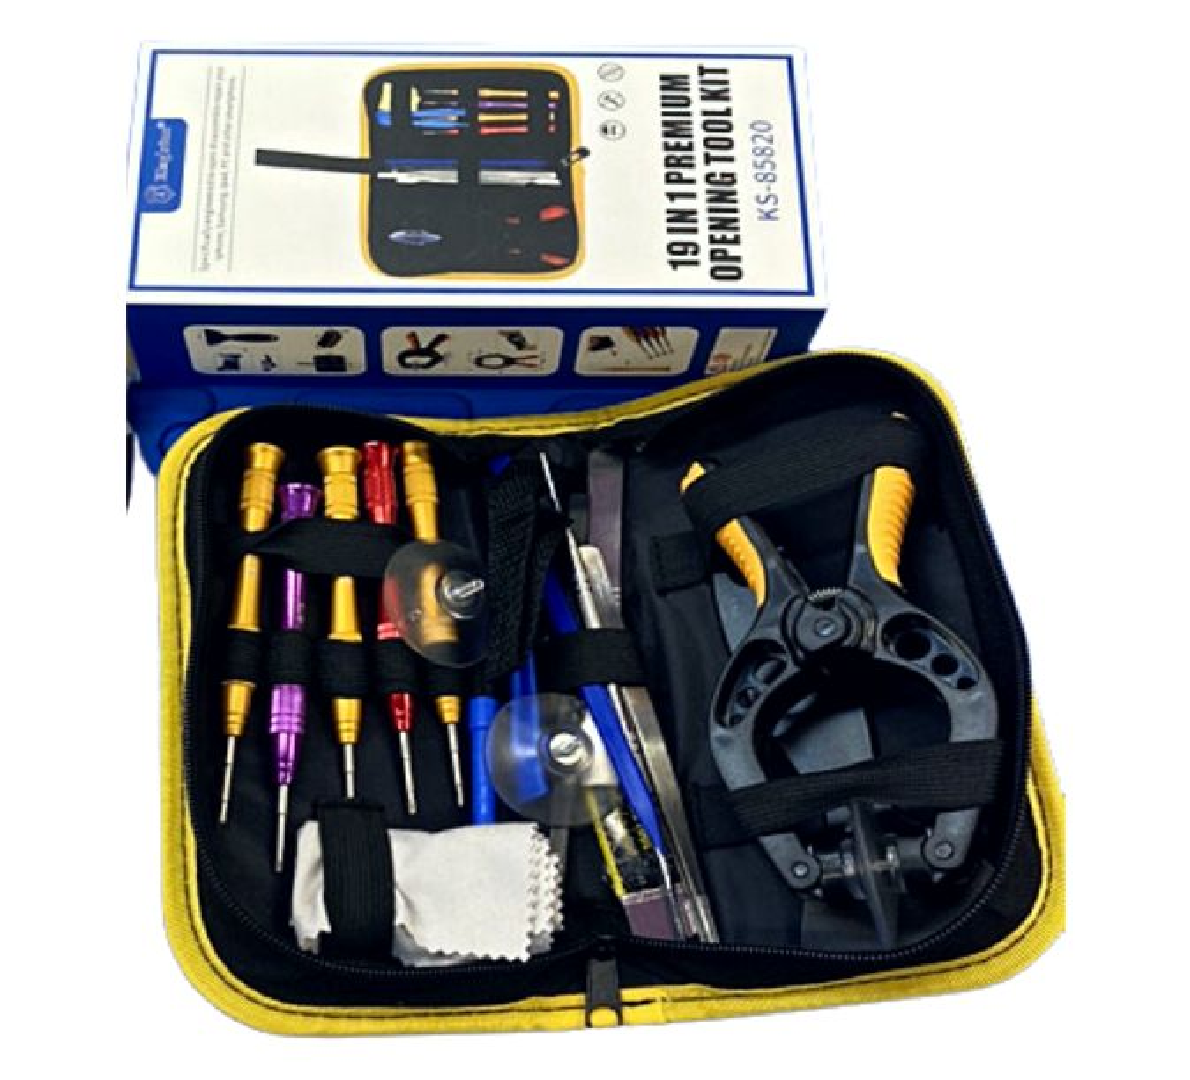  Kit de reparación de teléfonos móviles JF-857 10 en 1 varillas  de desmontaje para herramientas de reparación de barras de palanca para  teléfono celular/tableta : Electrónica